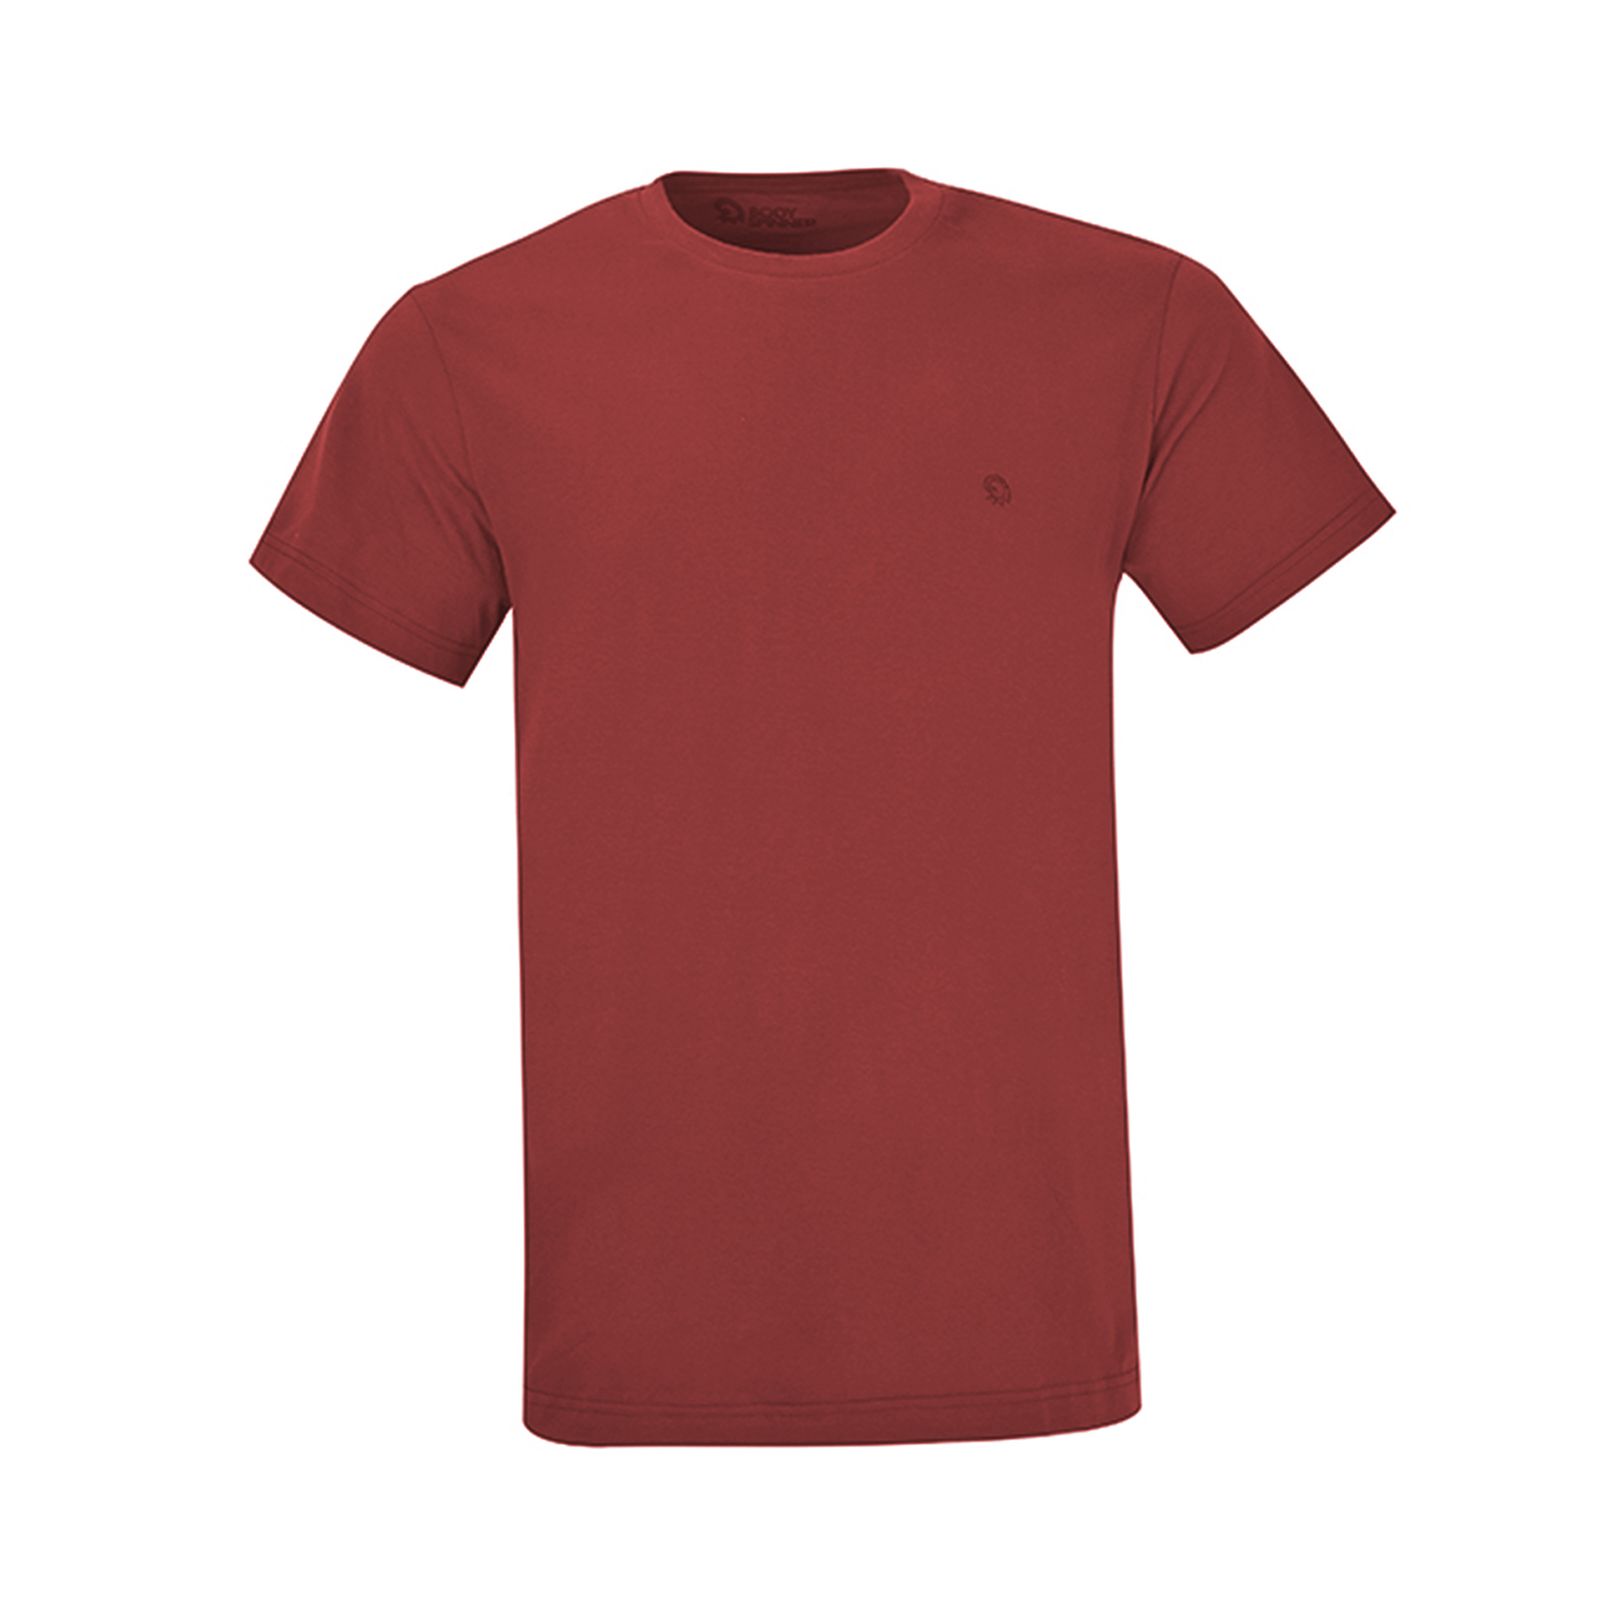 تی شرت آستین کوتاه مردانه بادی اسپینر مدل 11964737 کد 2 رنگ زرشکی -  - 1